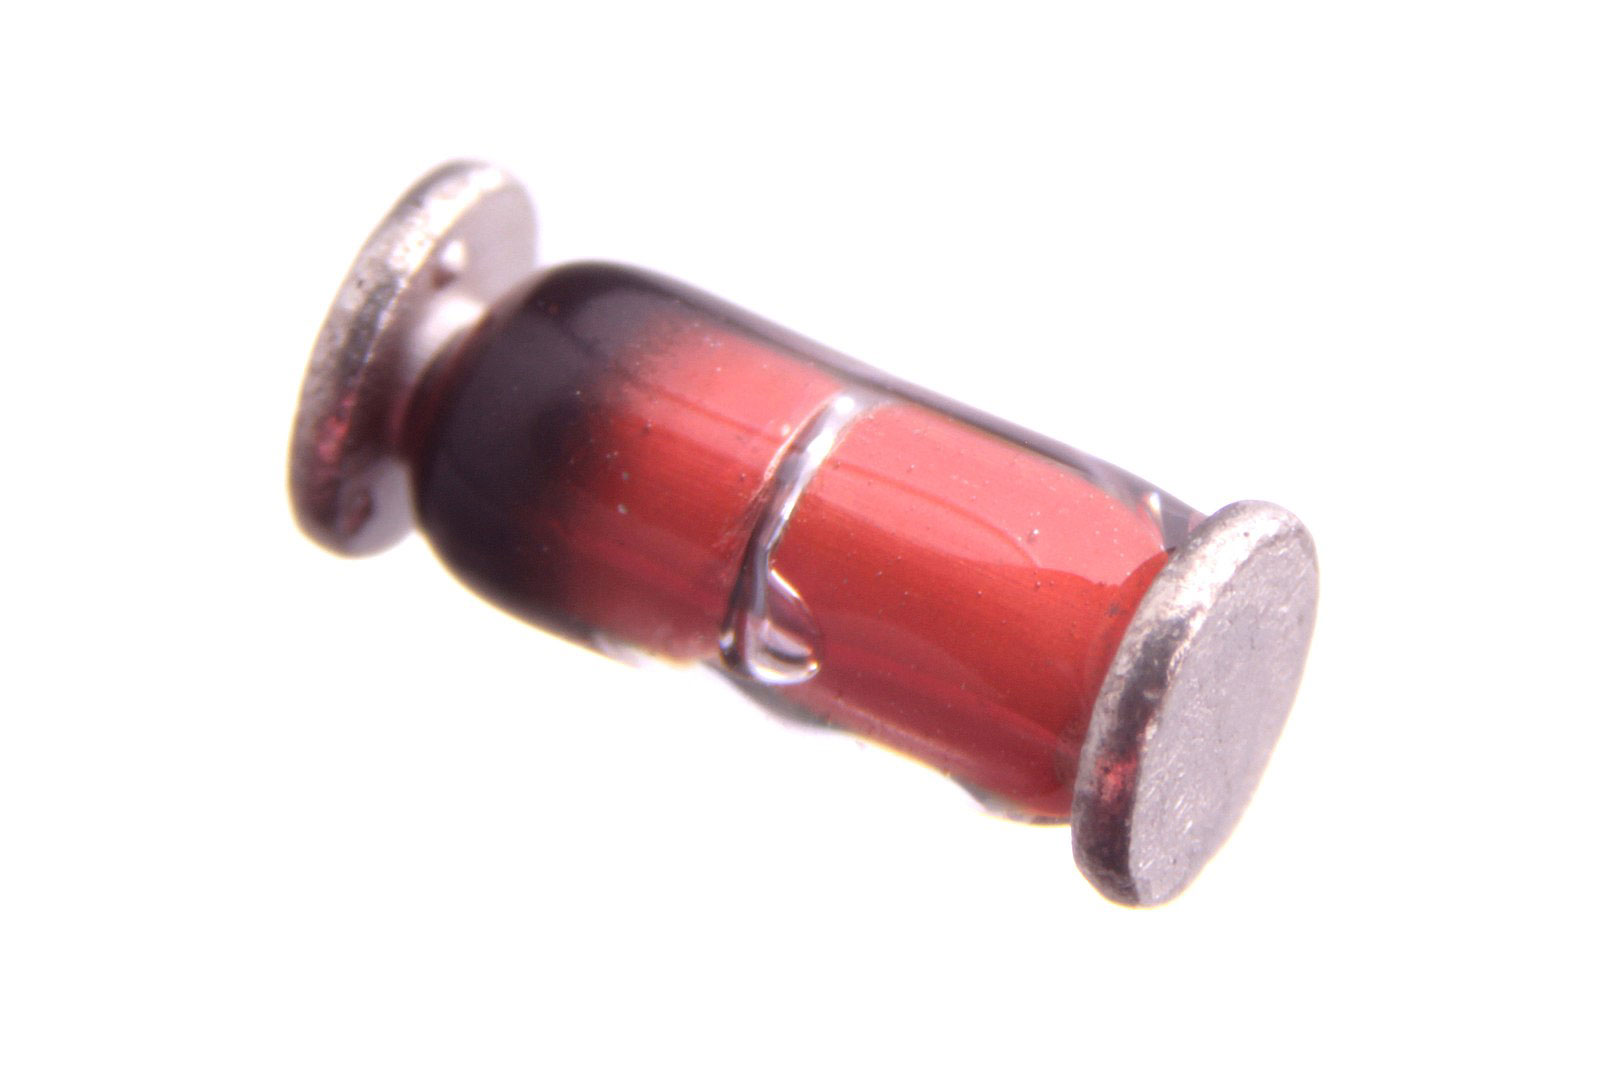 A mini MELF diode